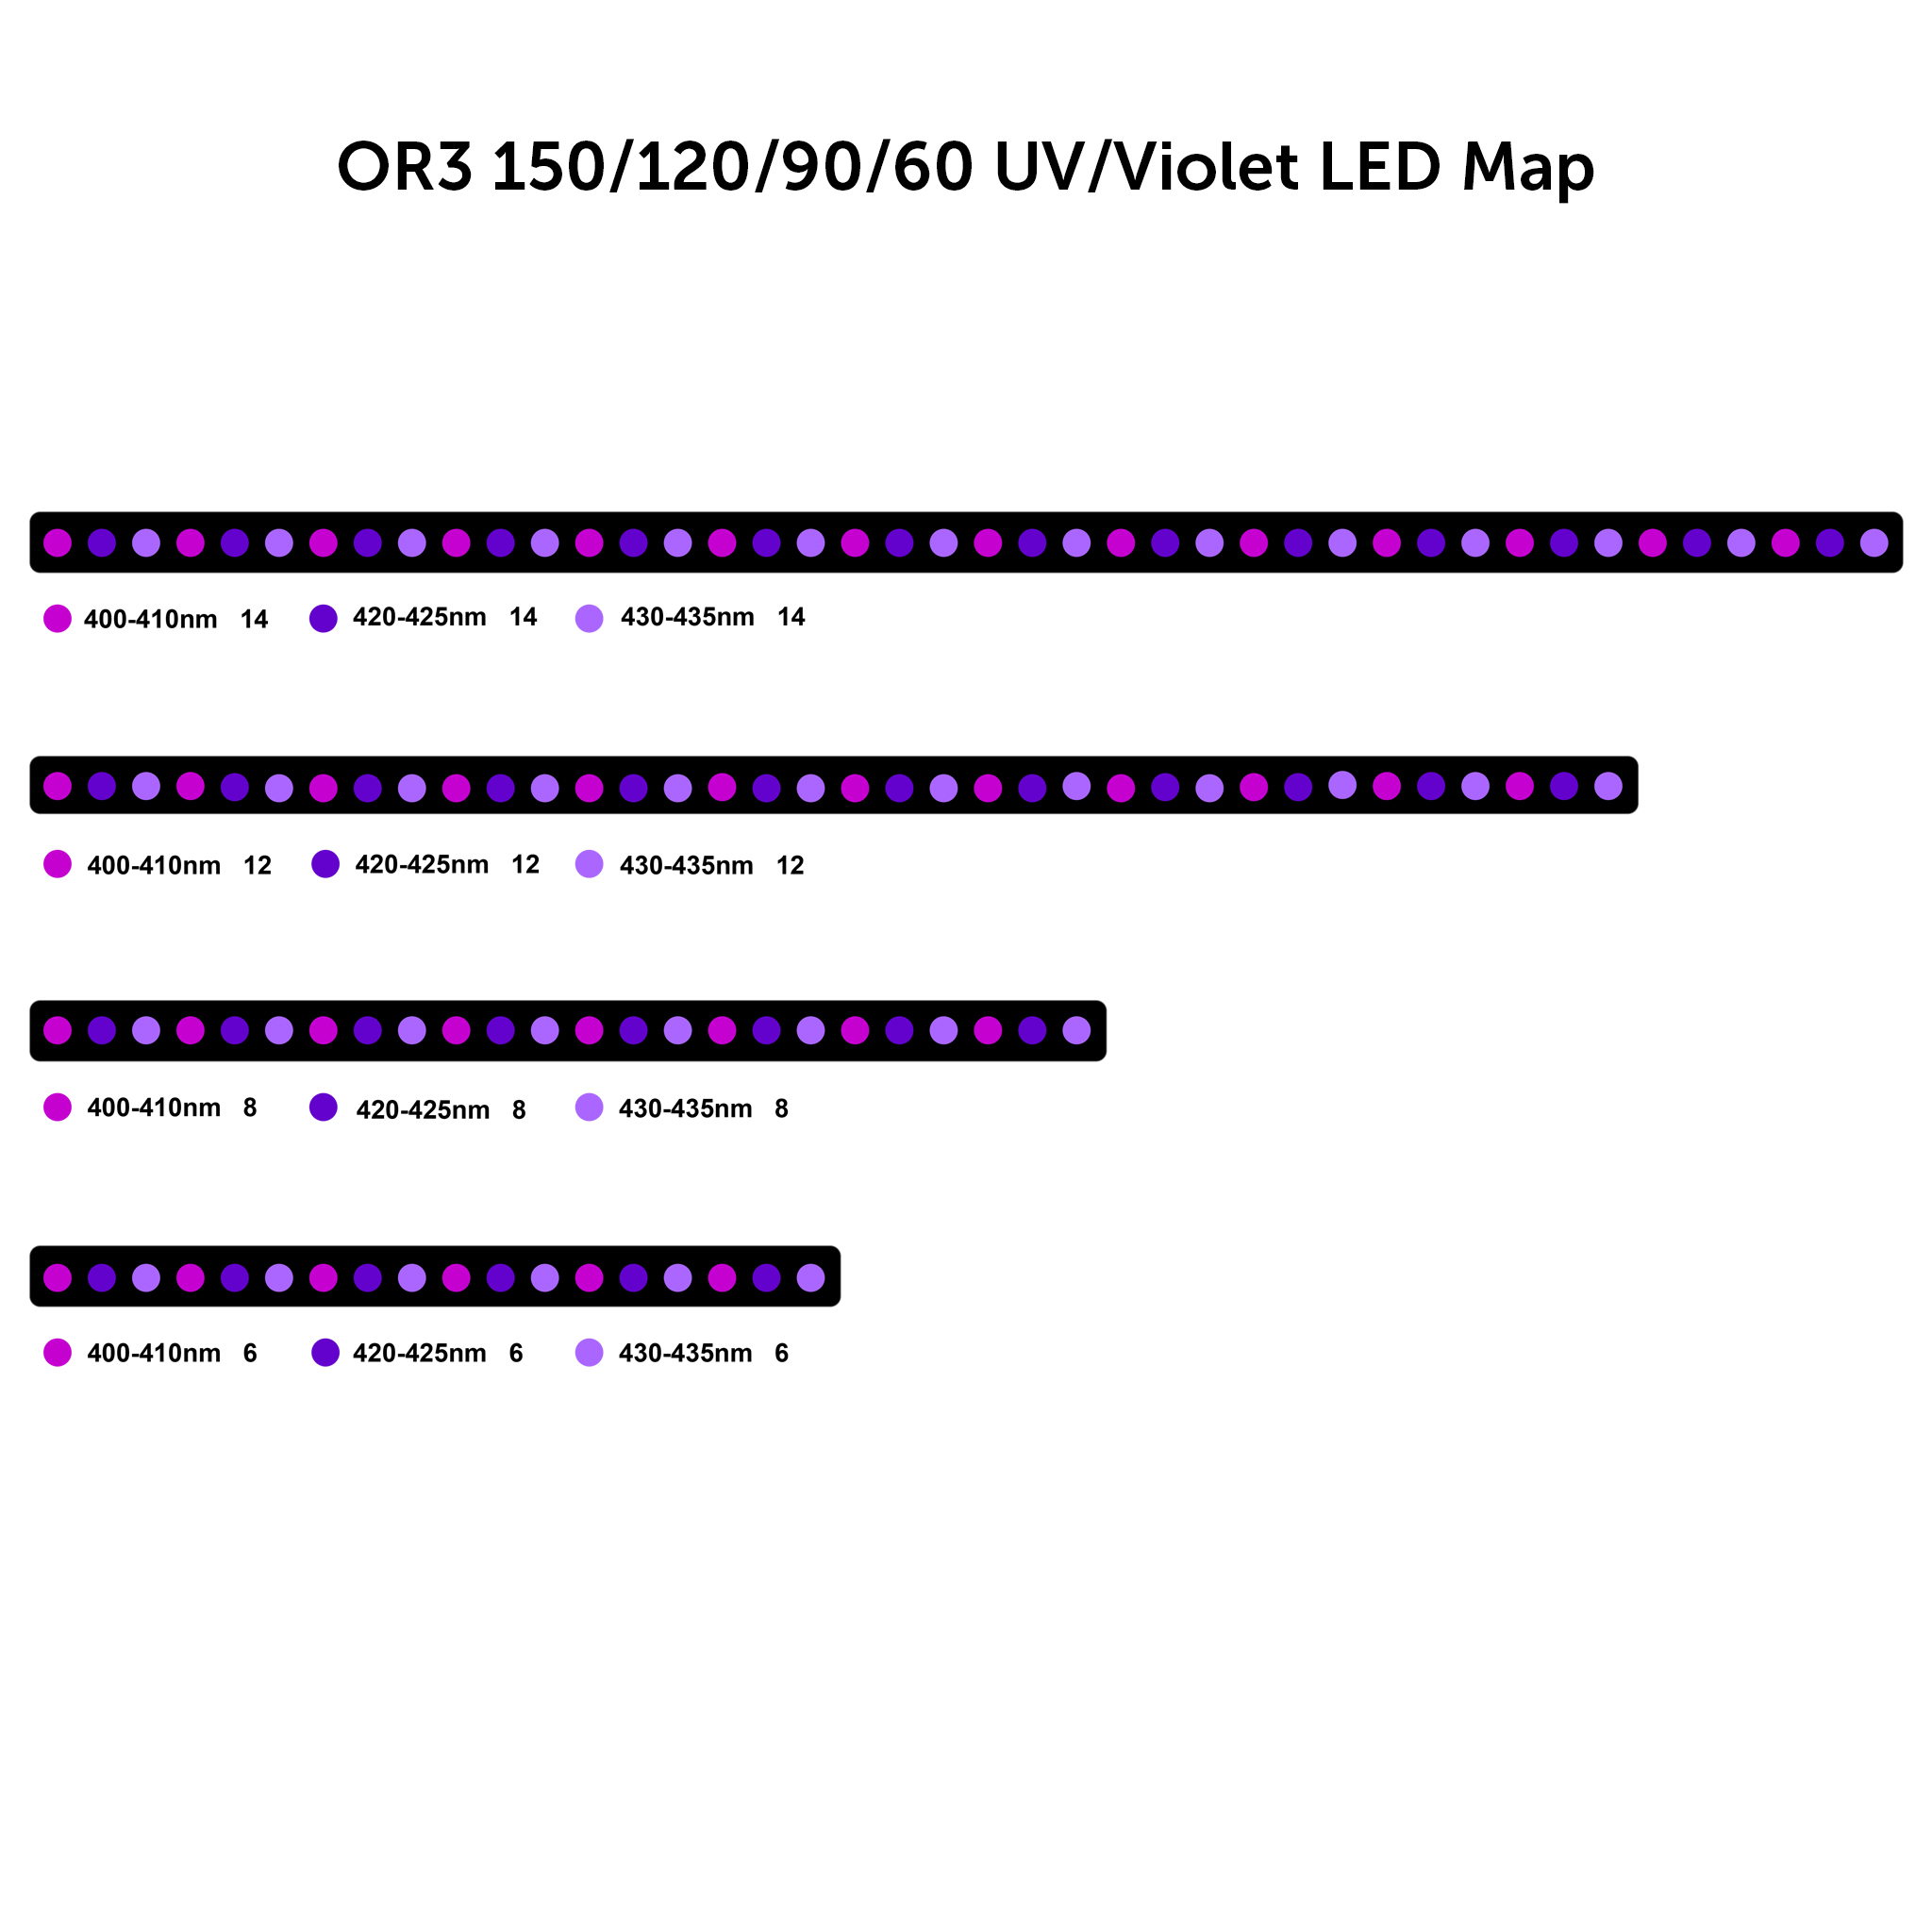 or3-reef-uv-violeta-led-mapa